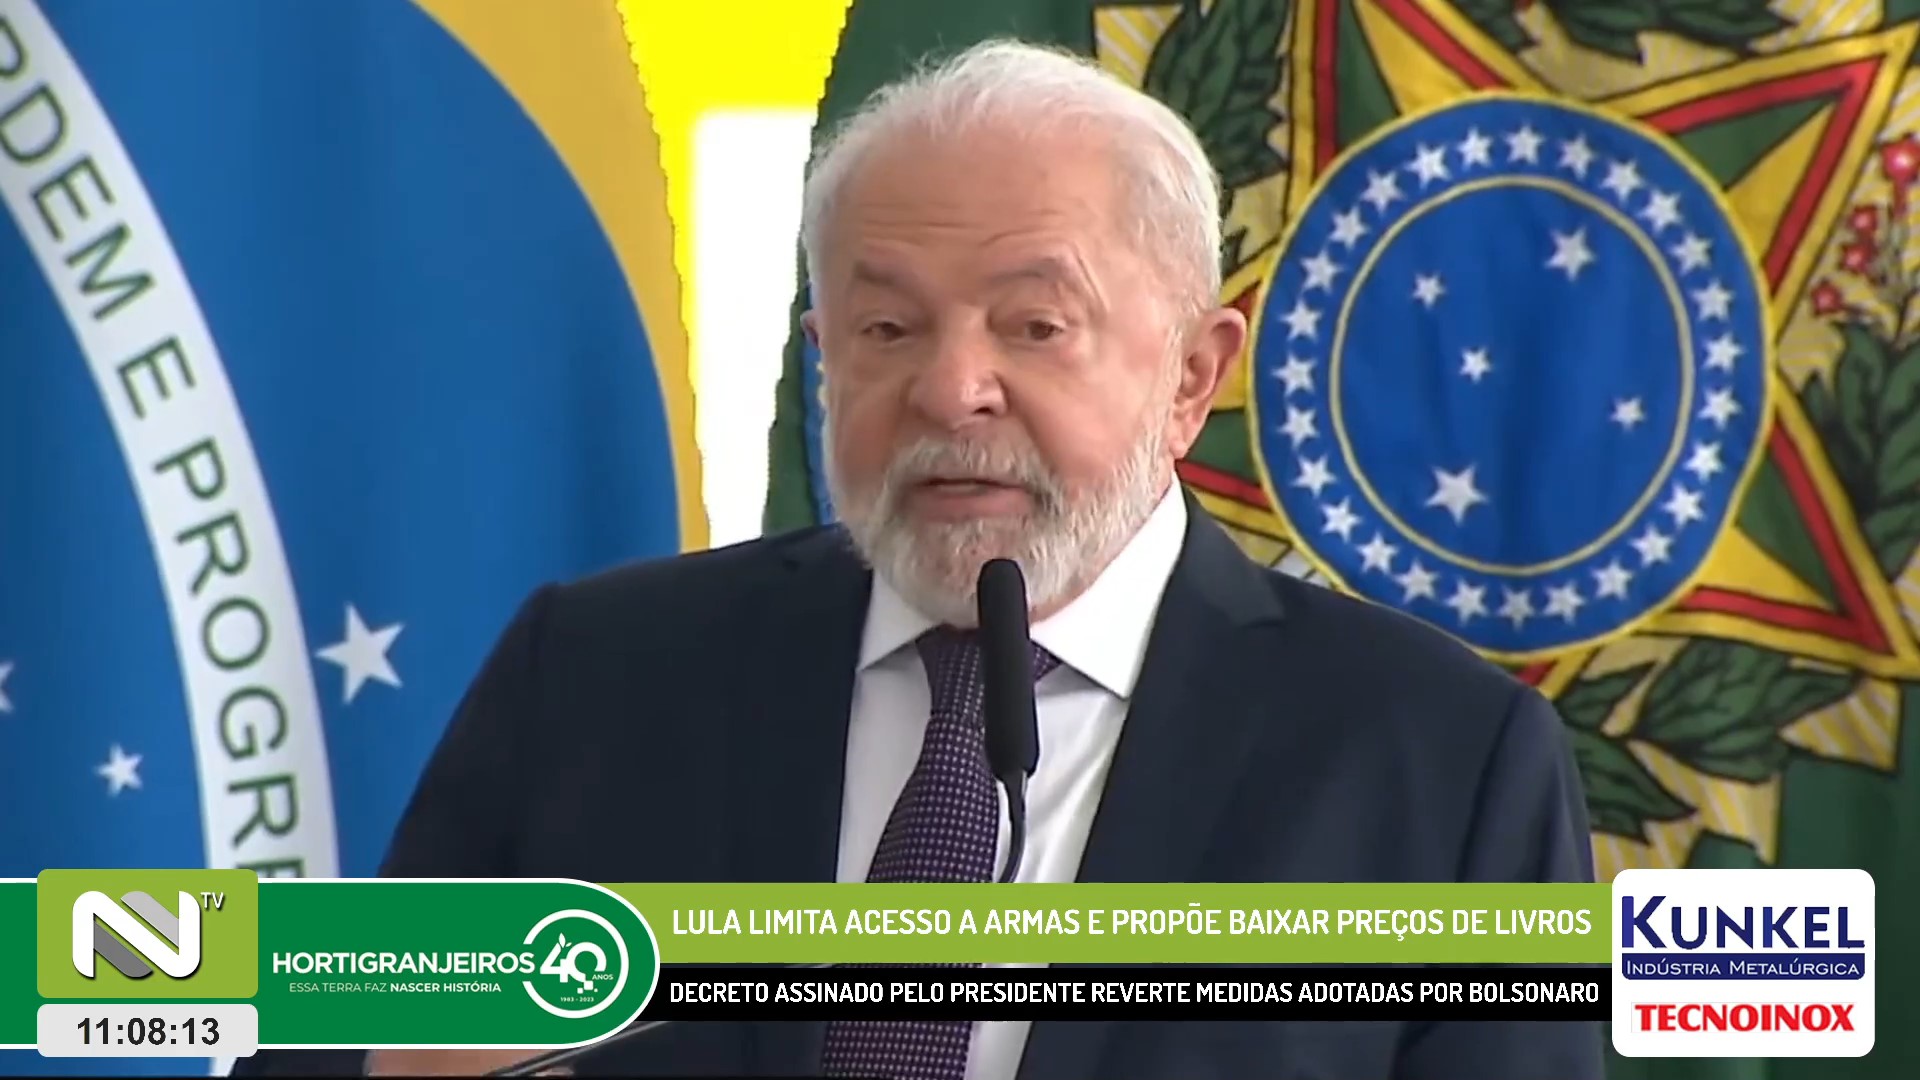 Lula limita acesso a armas e propõe baixar preços de livros